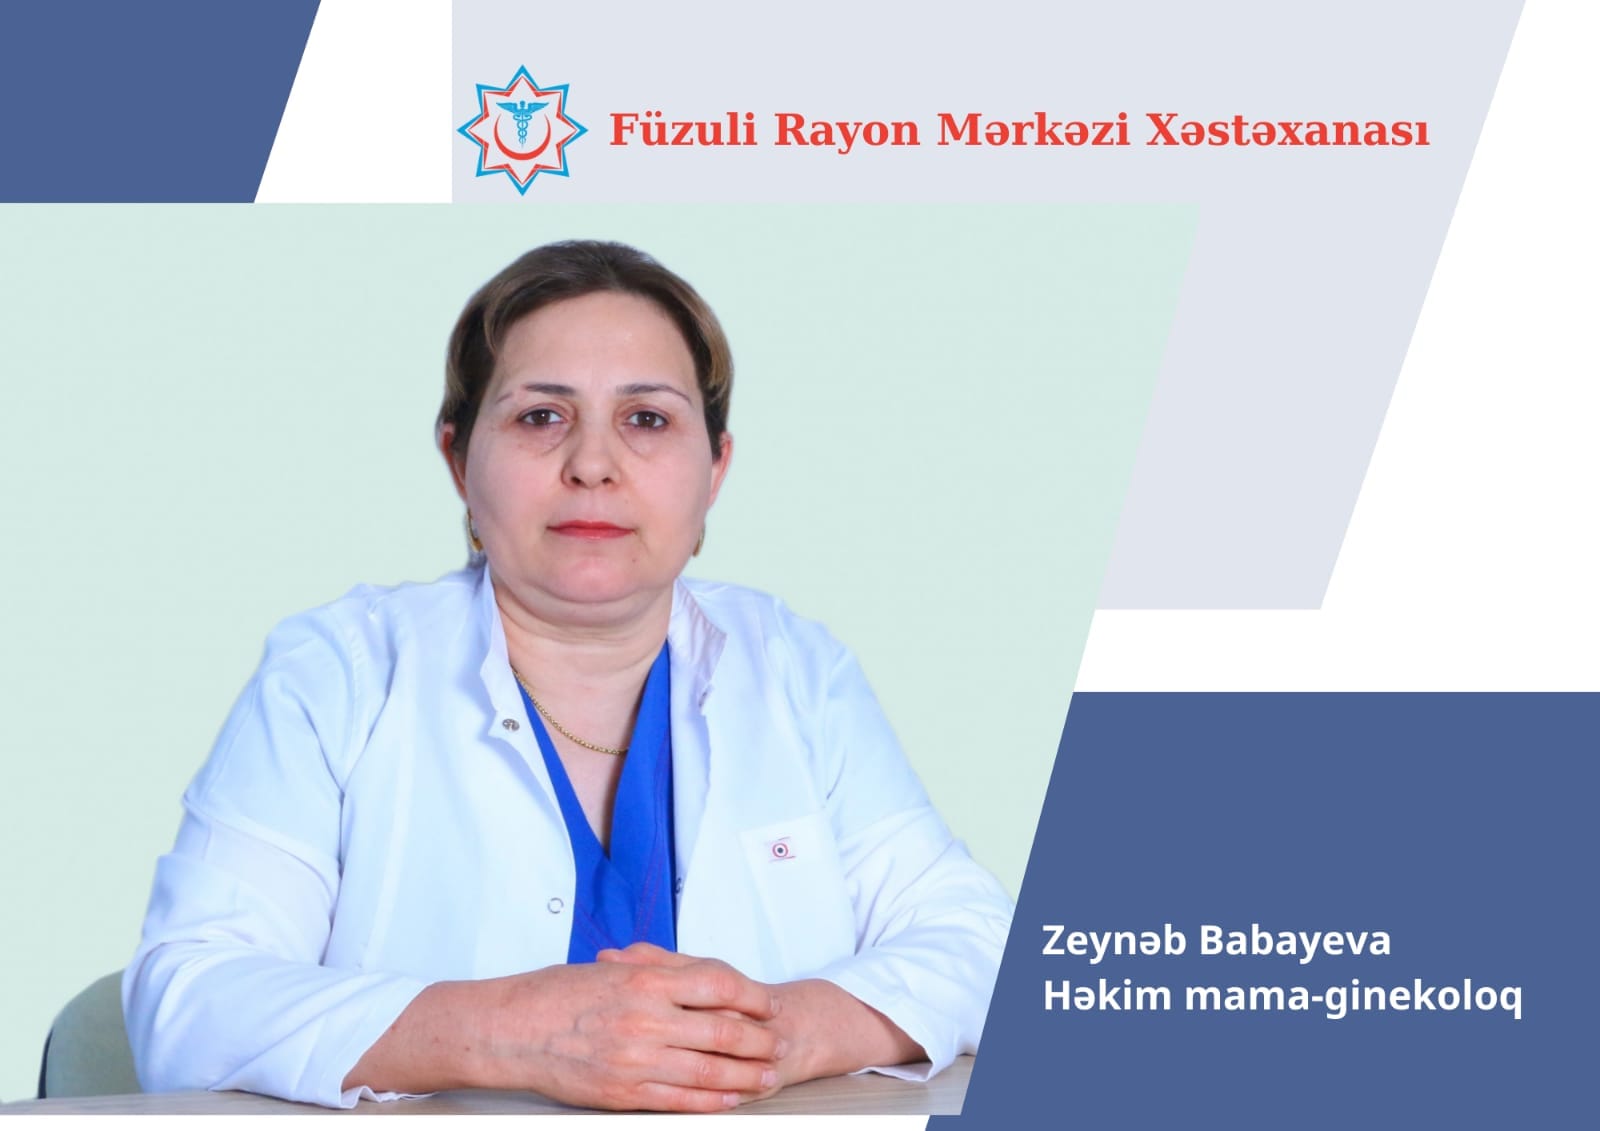 Zeynəb Babayeva - Füzuli Rayon Mərkəzi Xəstəxanasının mama-ginekoloqu 